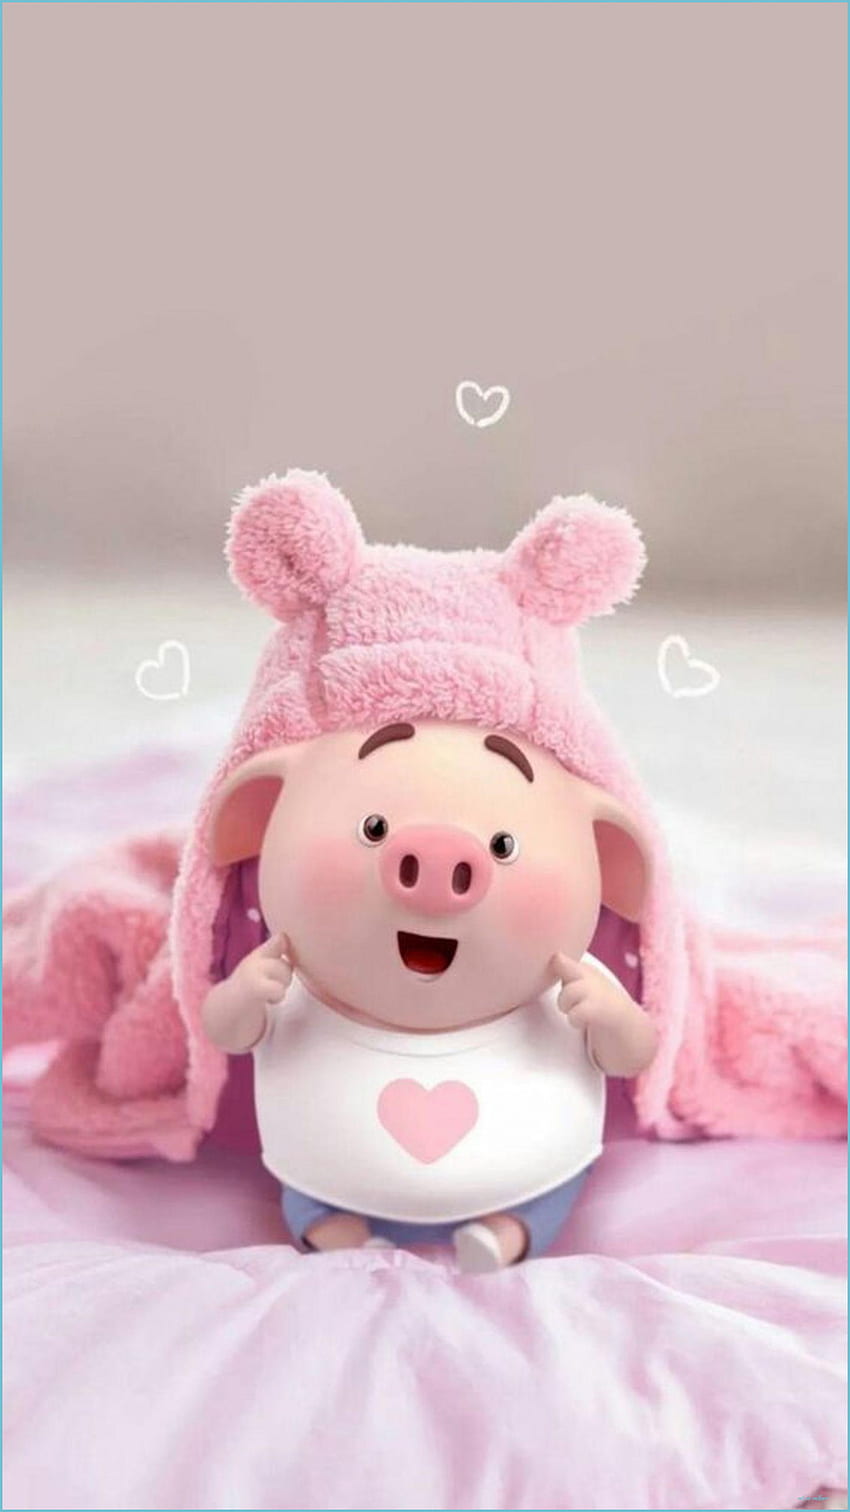 Điện thoại của bạn sẽ trở nên đáng yêu hơn với hình nền Piggy xinh xắn này! Hãy xem bức tranh nền này để cảm nhận sự ngọt ngào và hài hước của nó. Hãy để Piggy đáng yêu lái đưa bạn vào thế giới ngập tràn niềm vui.